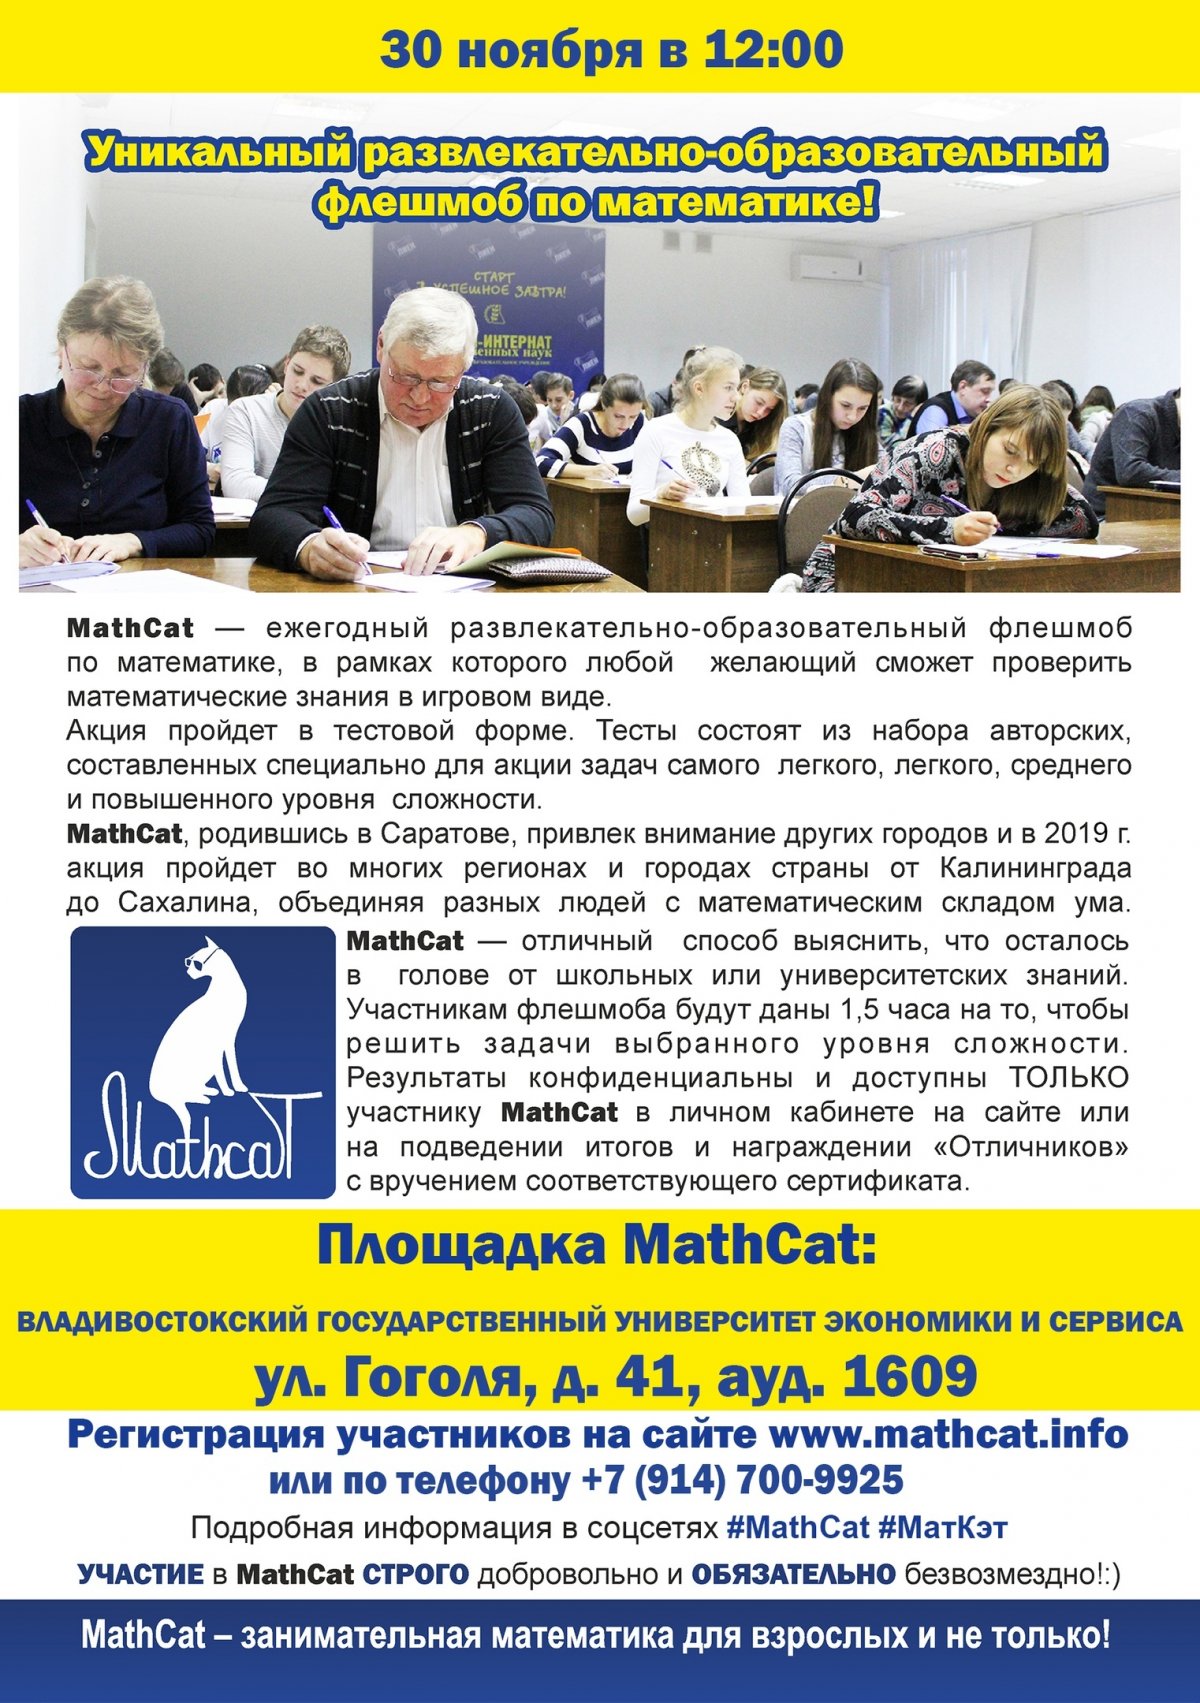 30 ноября во Владивостокском университете экономики и сервиса в 12:00 пройдет 6-й Всероссийский флешмоб «Контрольная по математике для взрослых и не только MathCat».